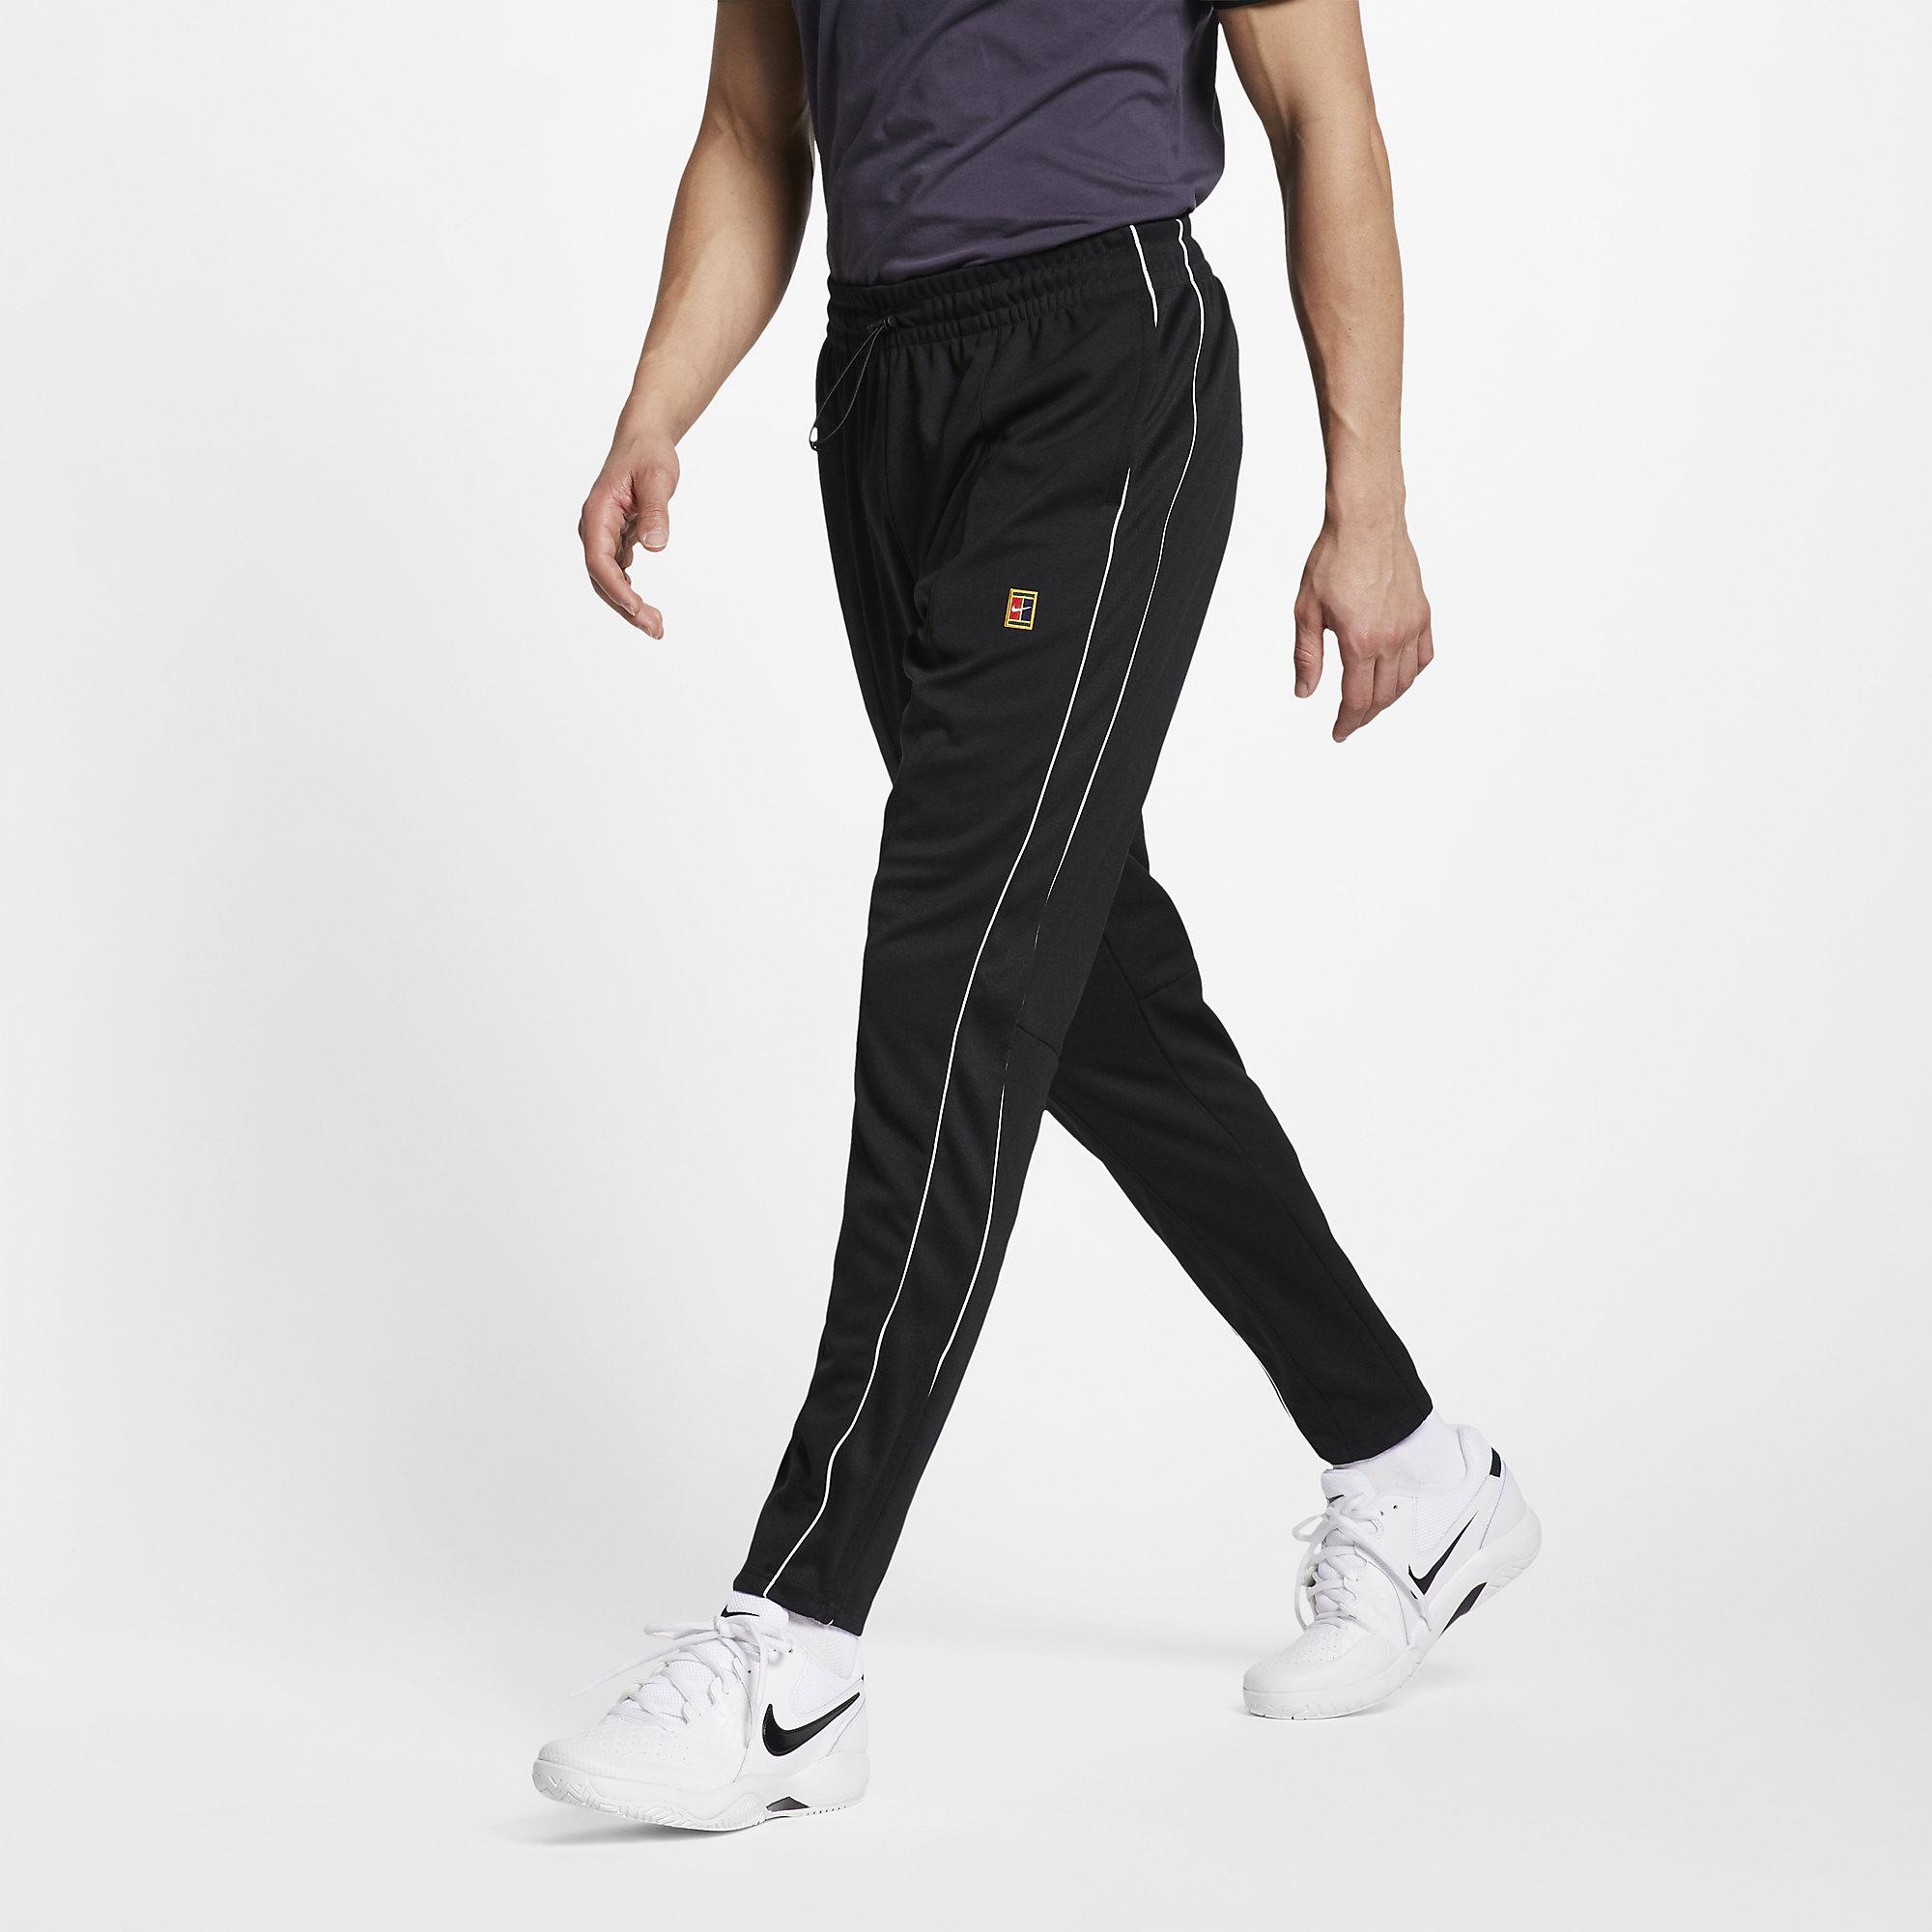 Nike Mens Tennis Pant - Black/White - Tennisnuts.com